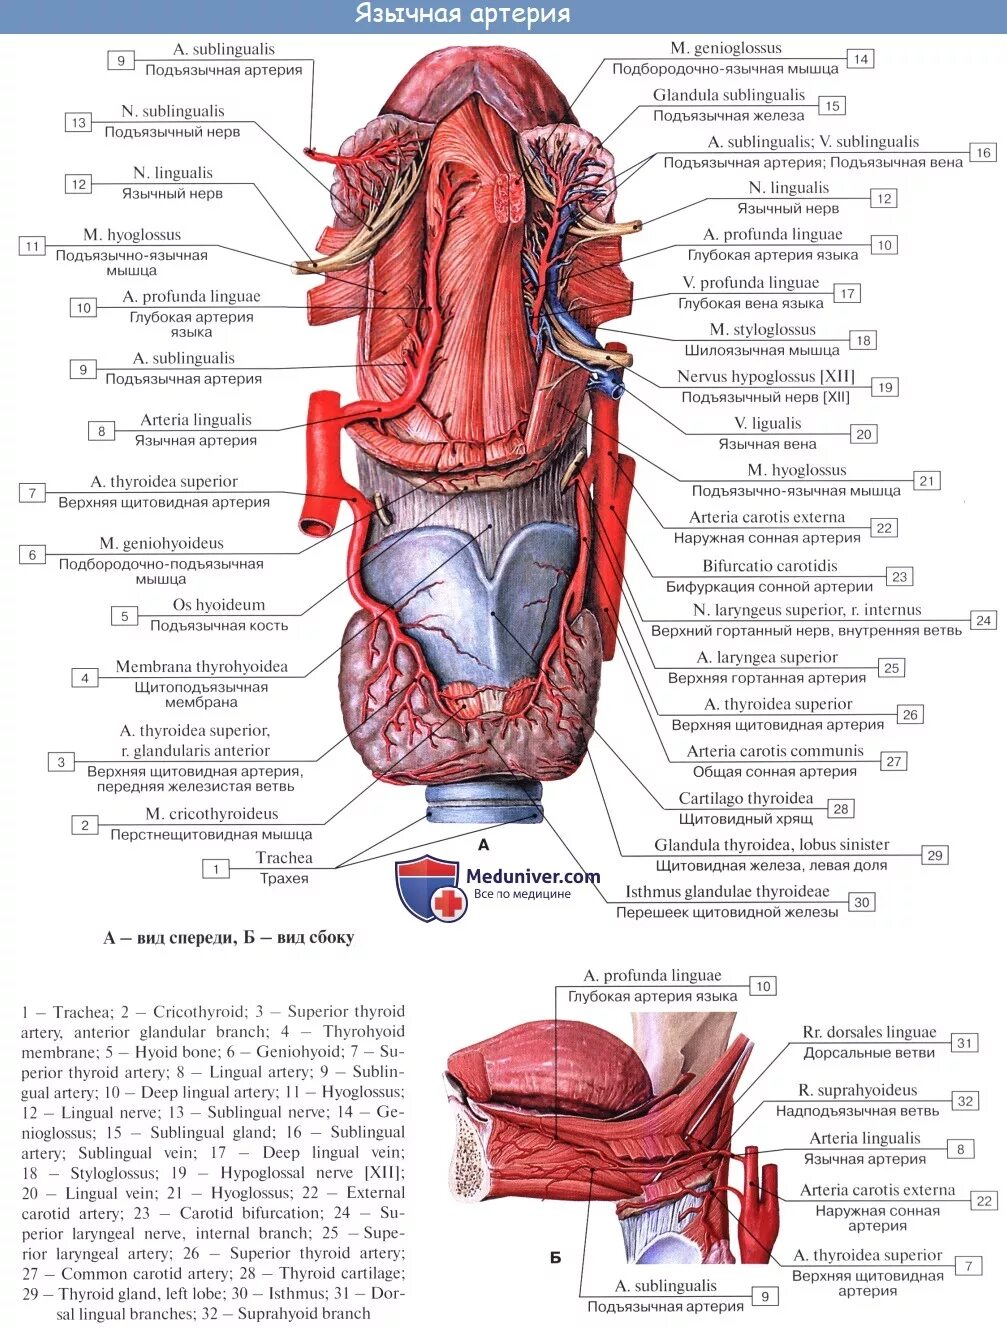 Обусловленный отсутствием железа латынь. Язычная и подъязычная артерии. Анатомия языка артерии и вены. Топографическая анатомия язычной артерии. Топографическая анатомия языка мышцы.